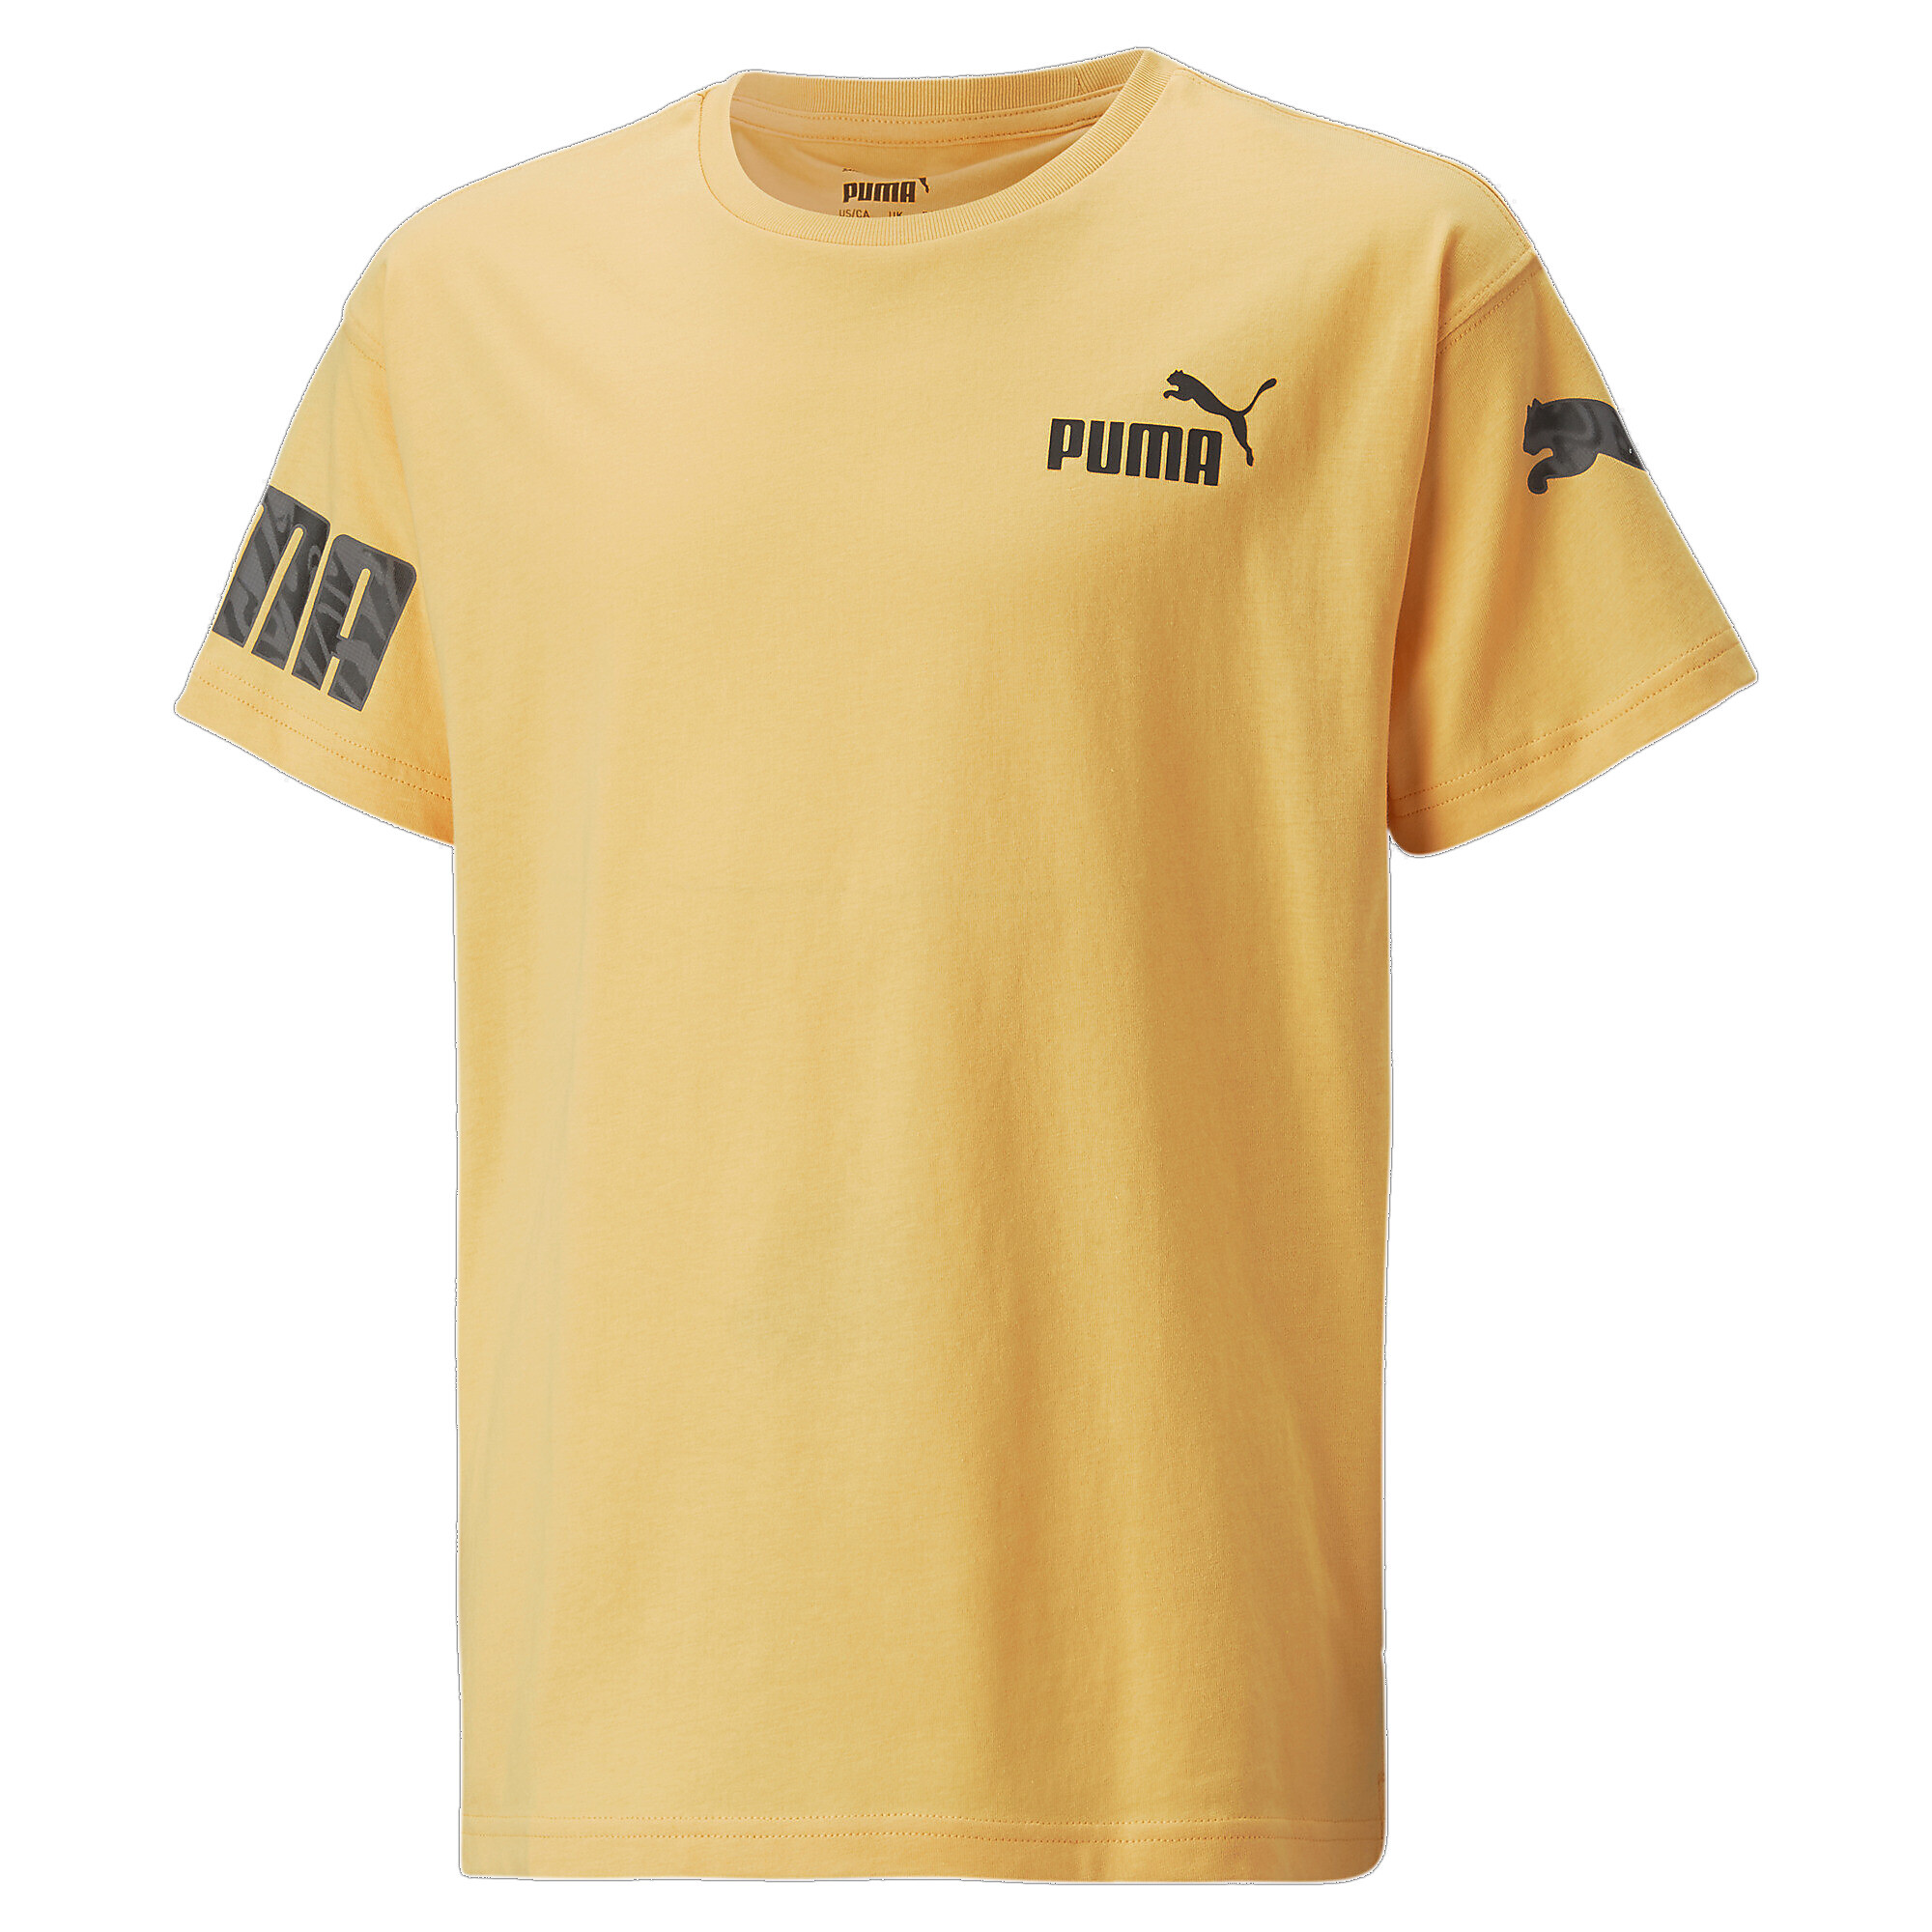 30%OFF！ プーマ キッズ ボーイズ PUMA POWER サマー 半袖 Tシャツ 120-160cm メンズ Mustard Seed ｜PUMA.comの画像